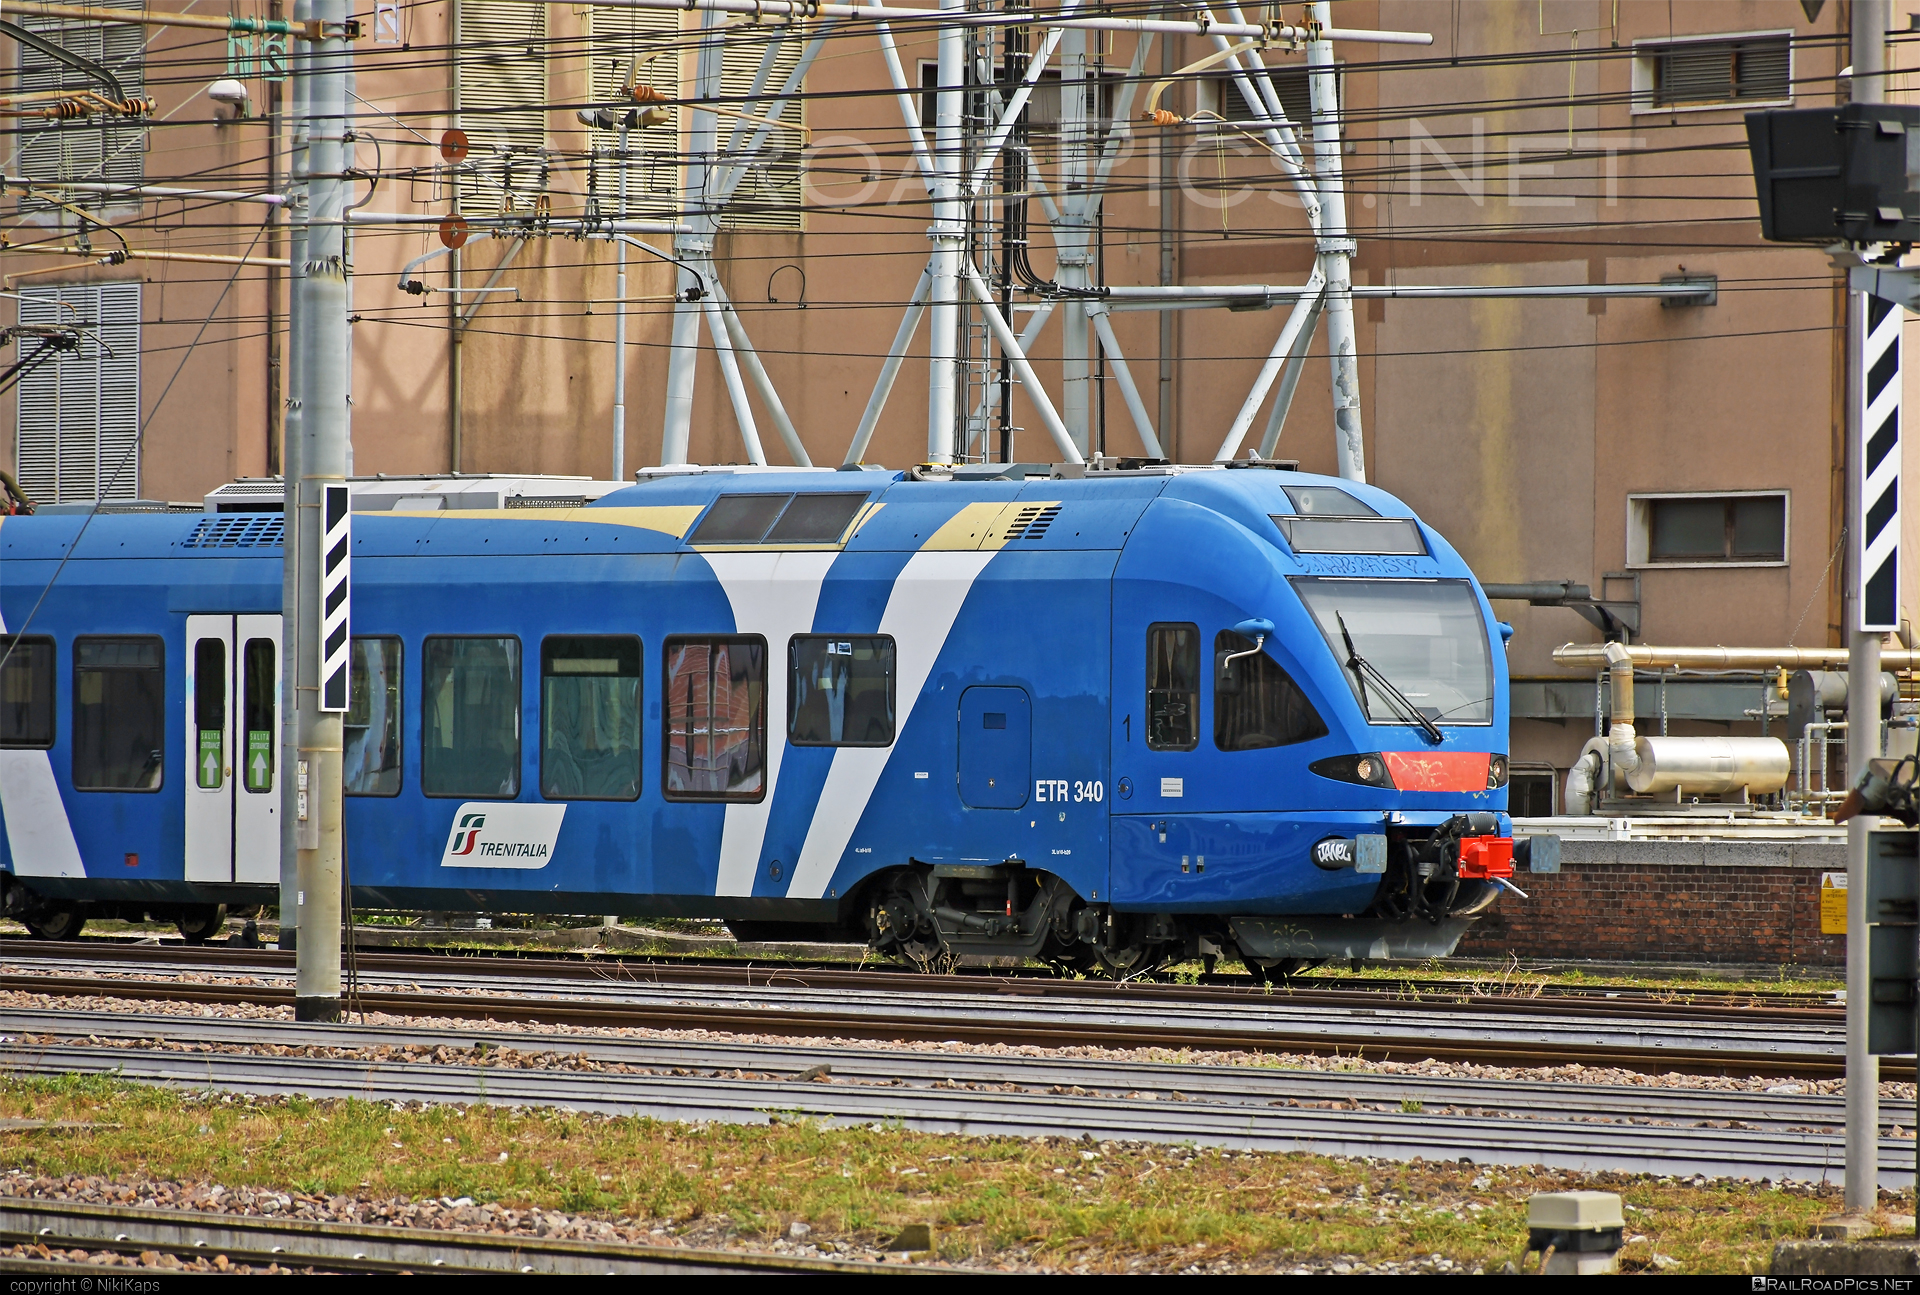 Stadler FLIRT - 340 002-4 operated by Trenitalia S.p.A. #ferroviedellostato #fs #fsitaliane #stadler #stadlerFlirt #stadlerrail #stadlerrailag #trenitalia #trenitaliaspa